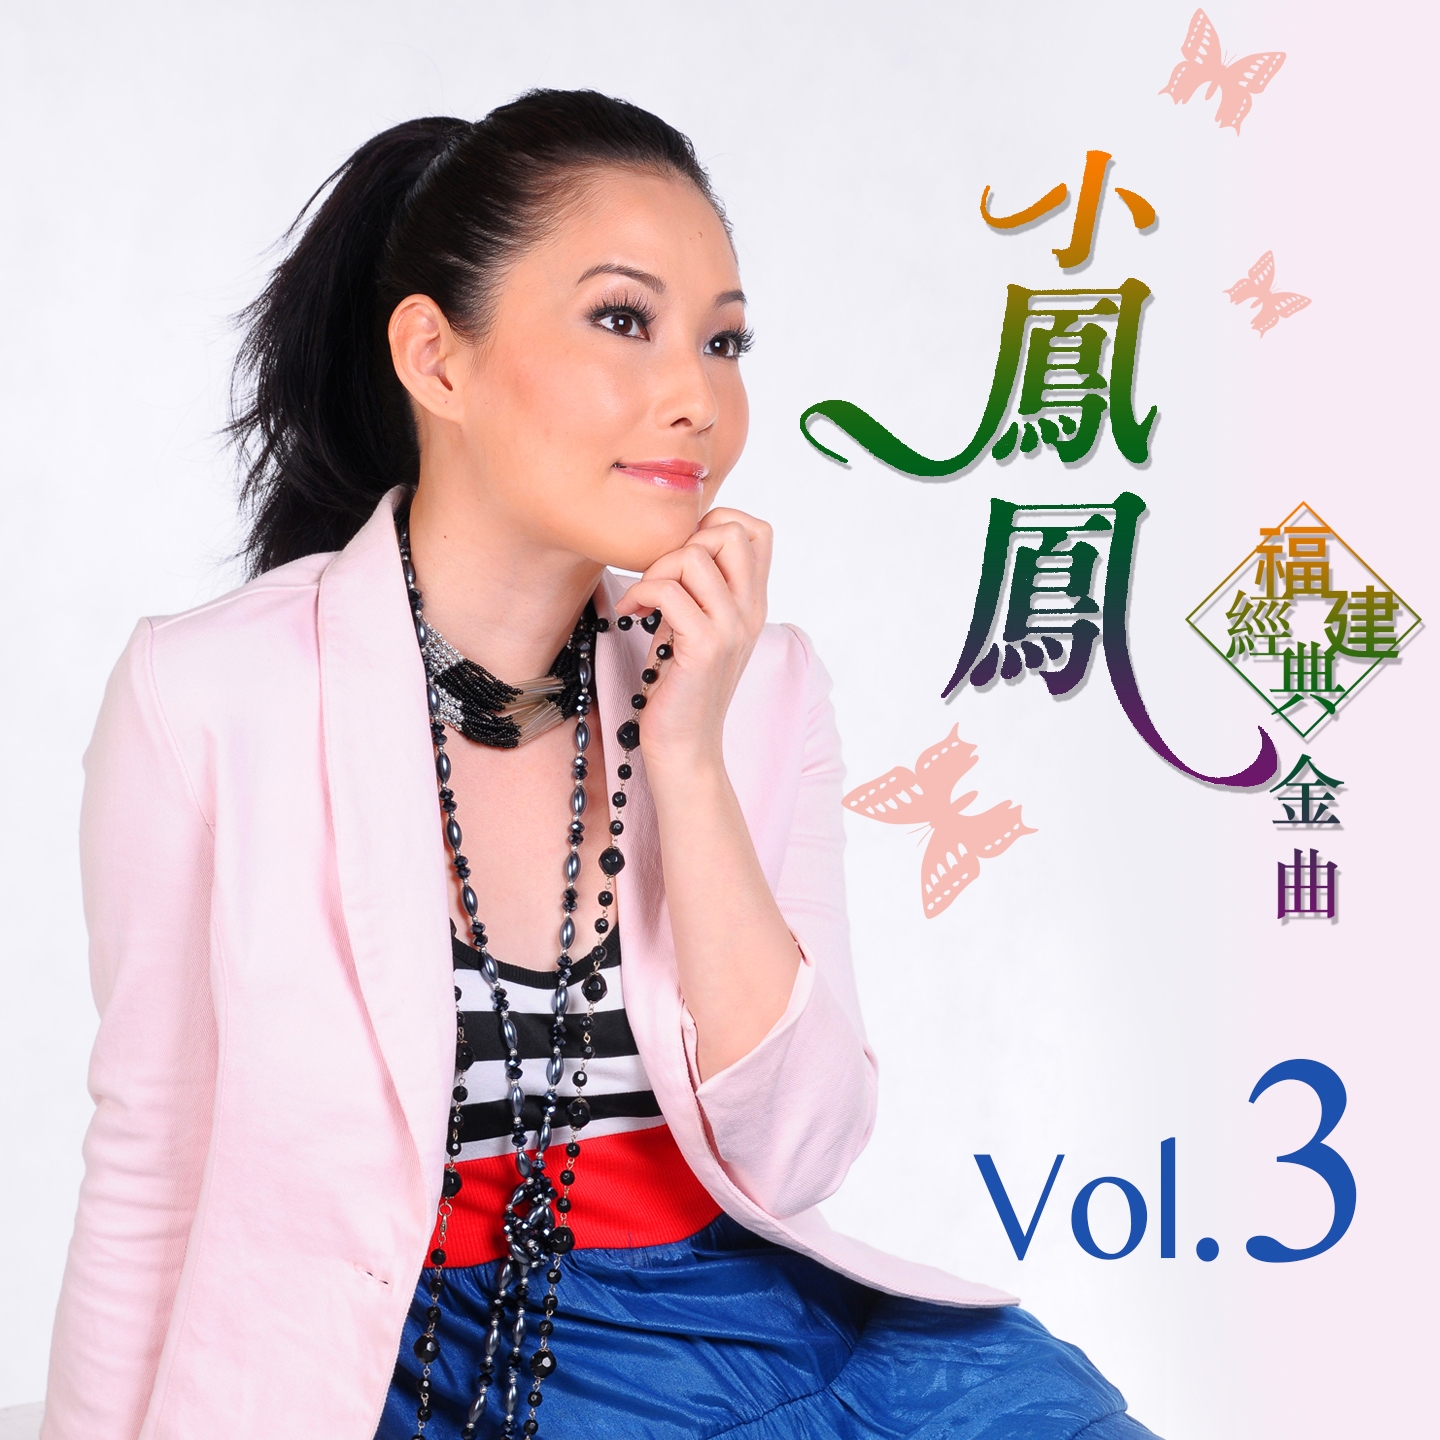 xiao feng feng fu jian jing dian jin qu, Vol. 3